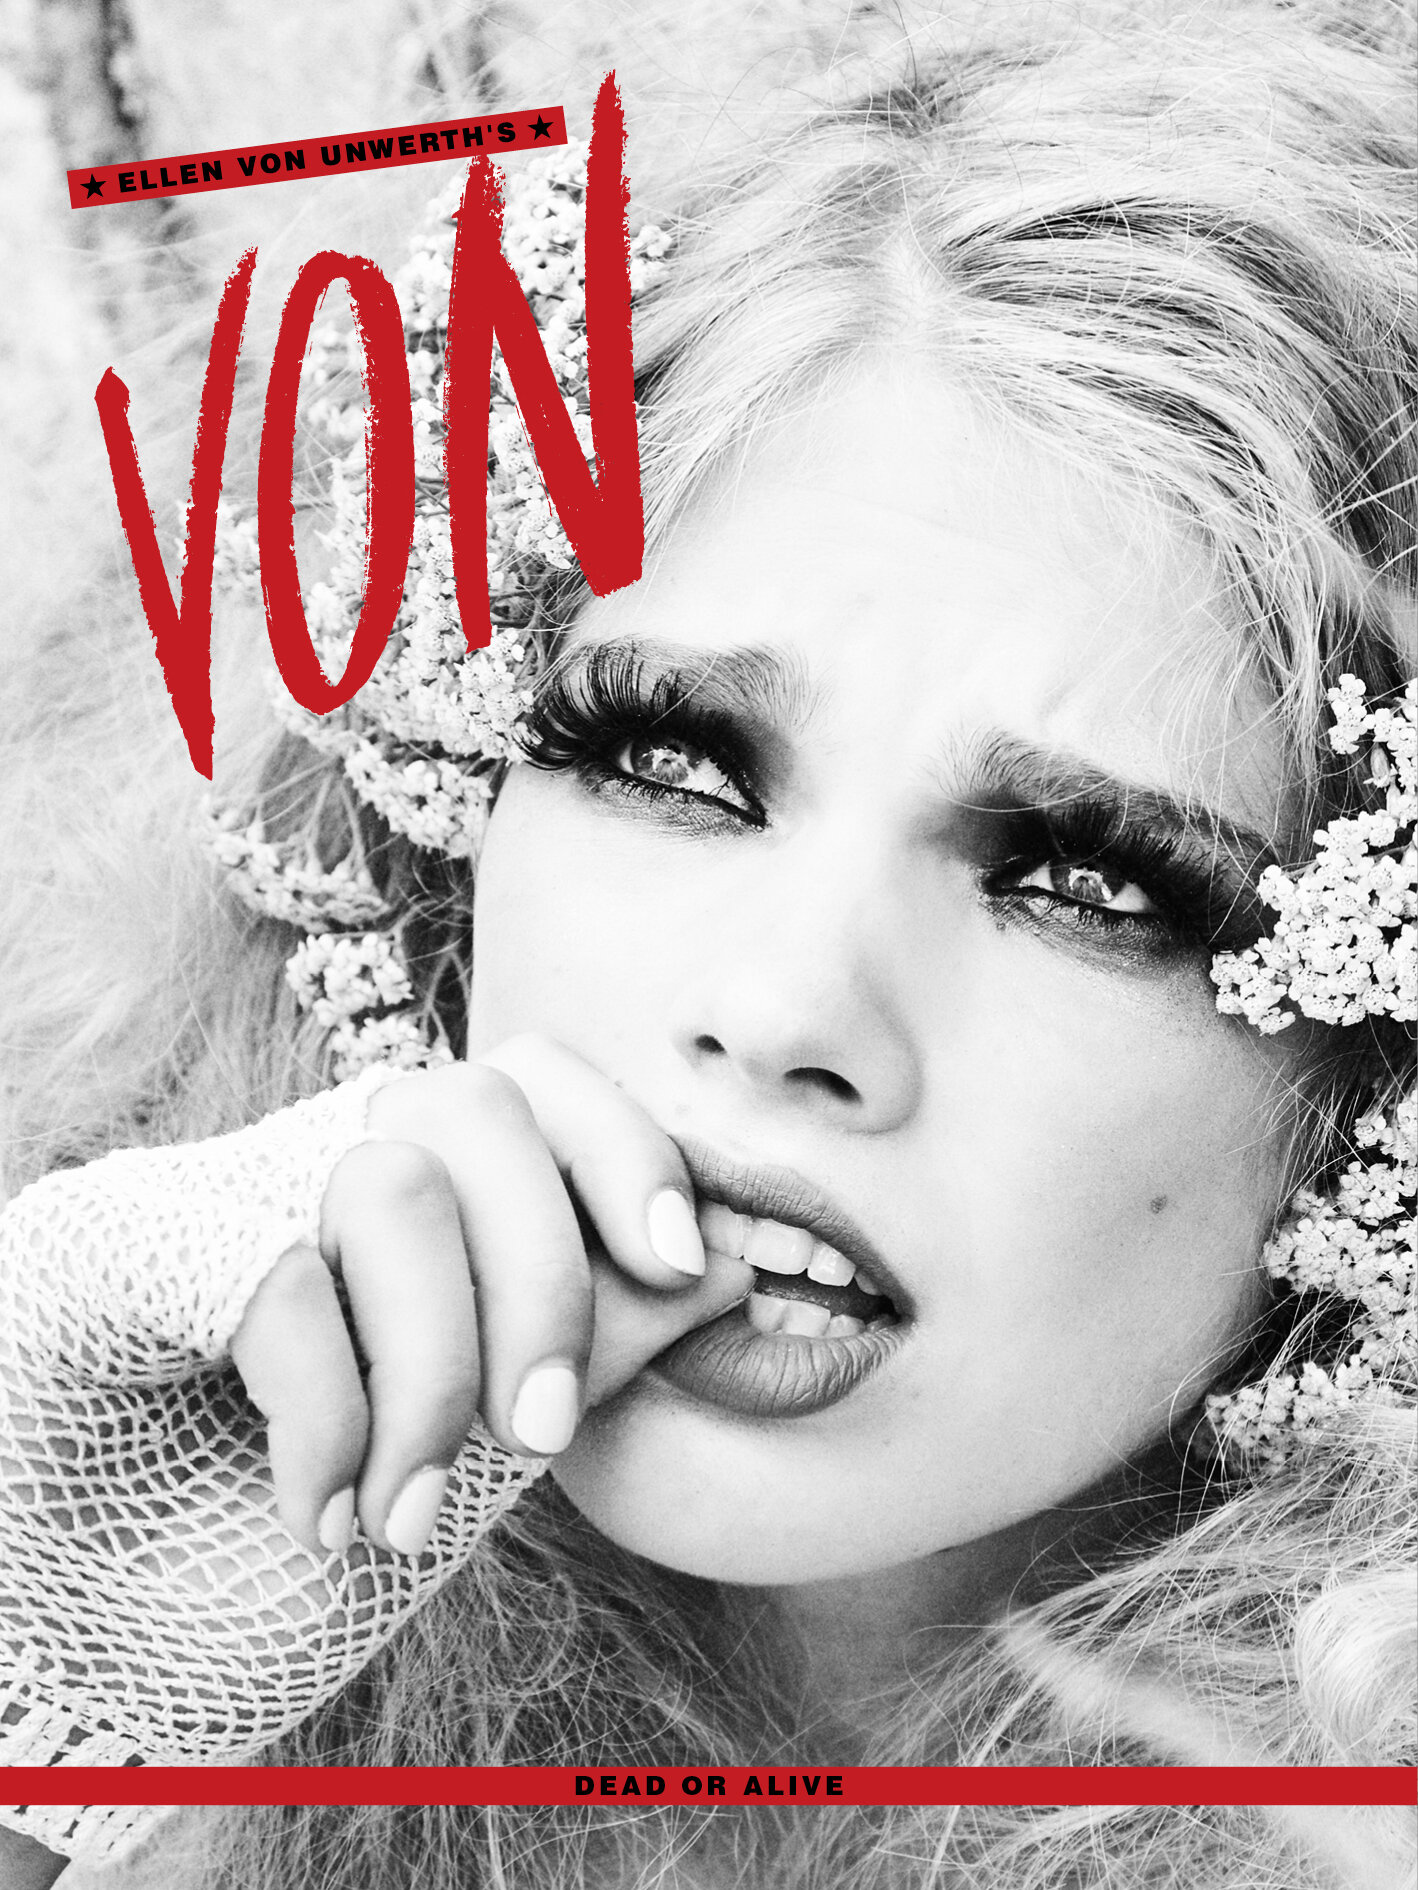 🔥 Vonline — Ellen von Unwerth's VON magazine